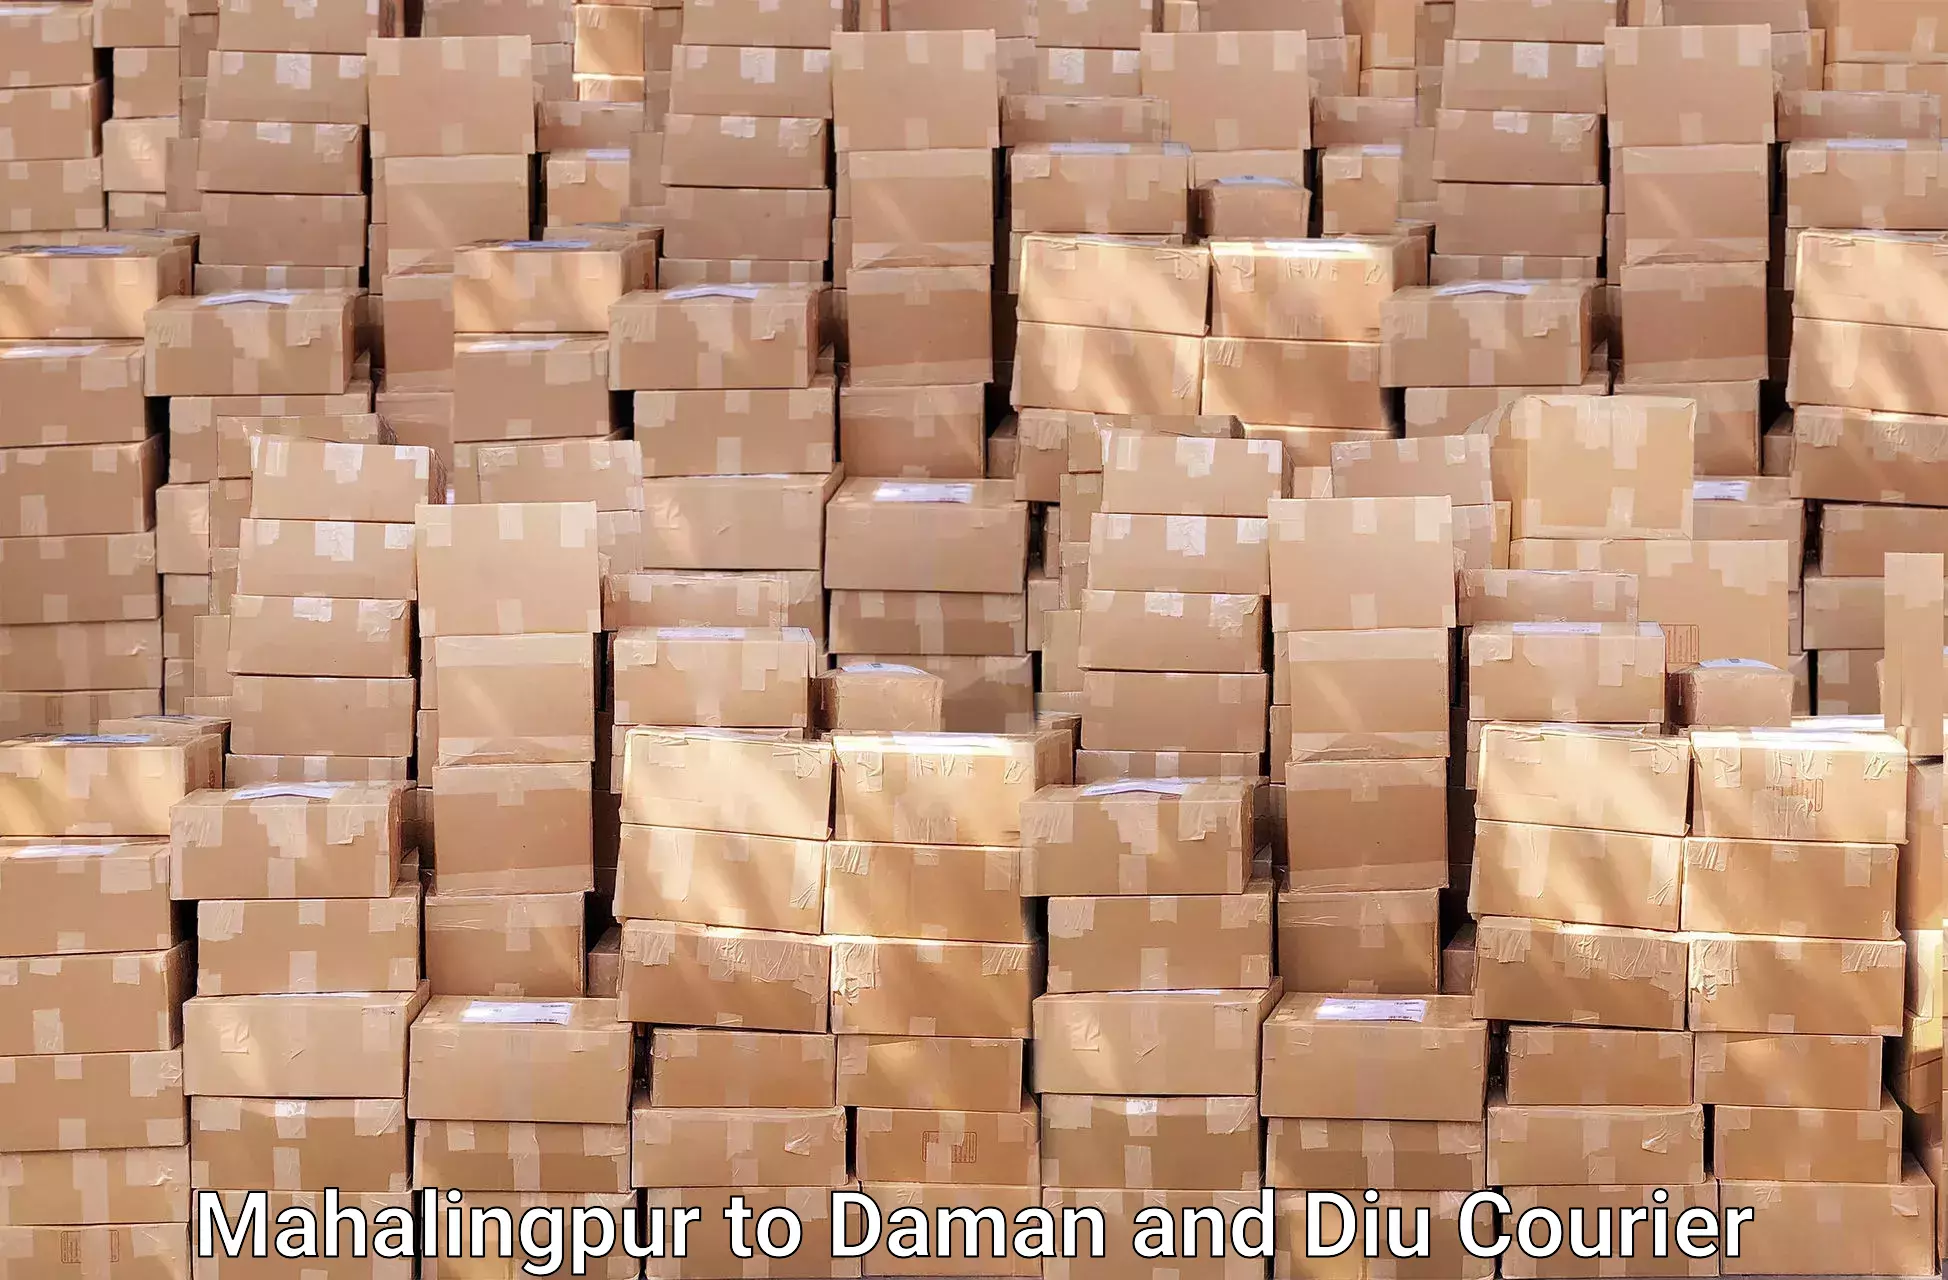 Door-to-door relocation services in Mahalingpur to Diu